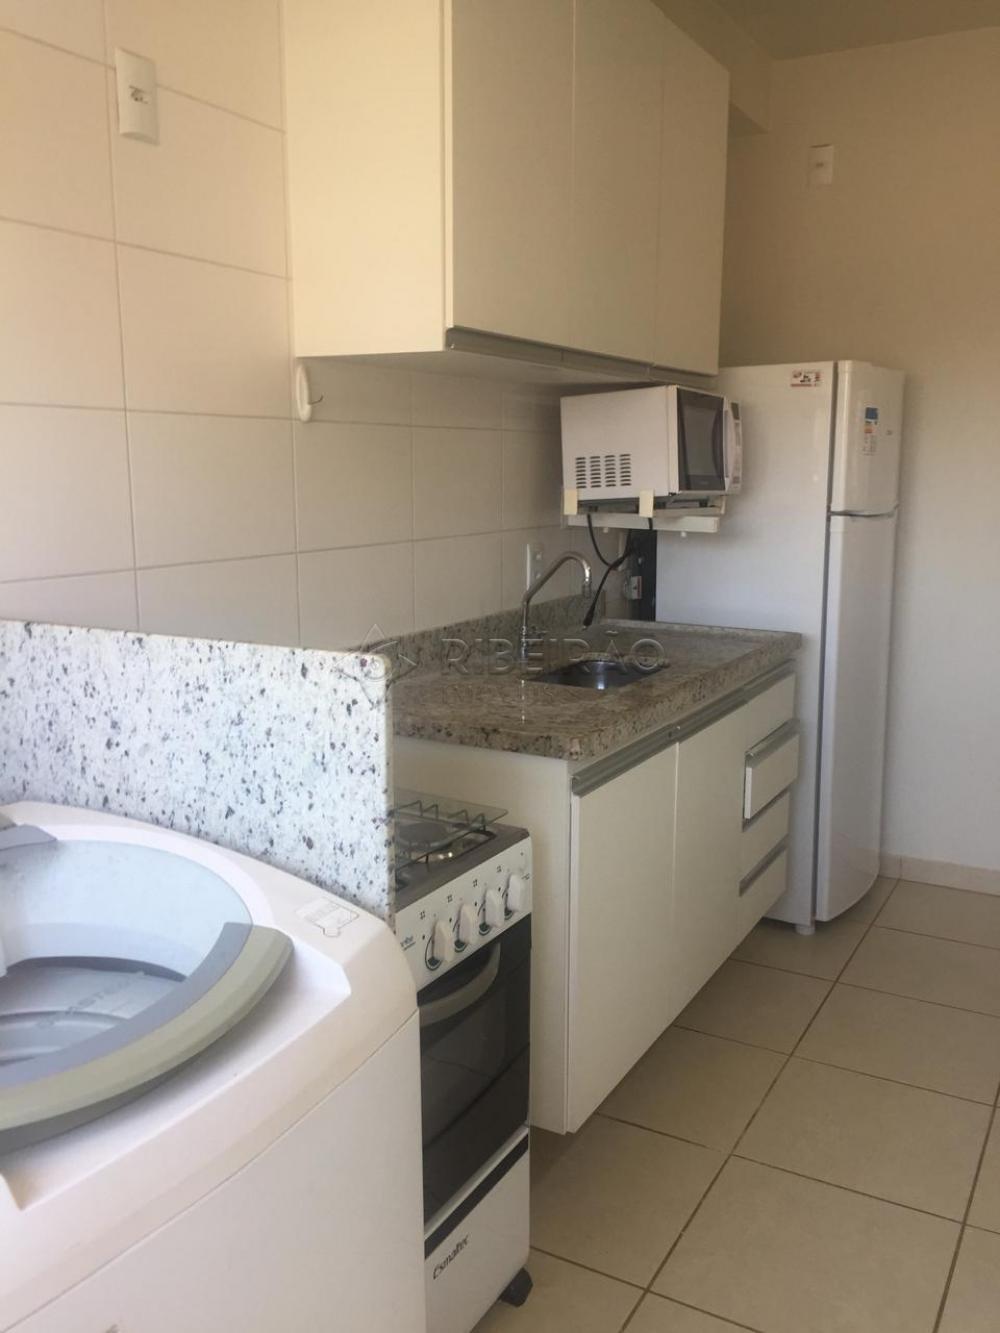 Comprar Apartamento / Flat / Loft / Kitnet em Ribeirão Preto R$ 269.000,00 - Foto 7